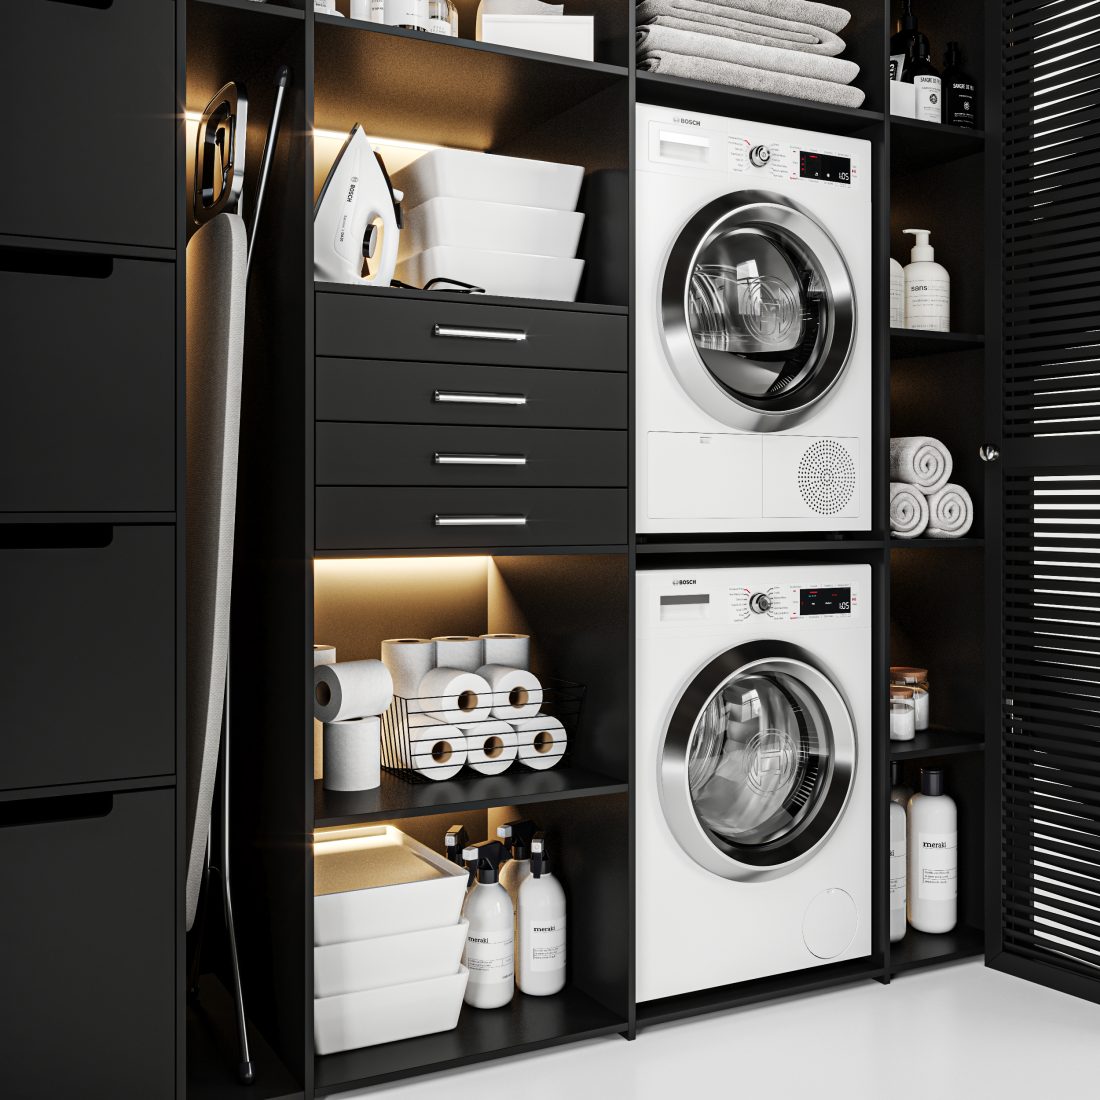 Laundry Room 02 - 3D Model for VRay, Corona